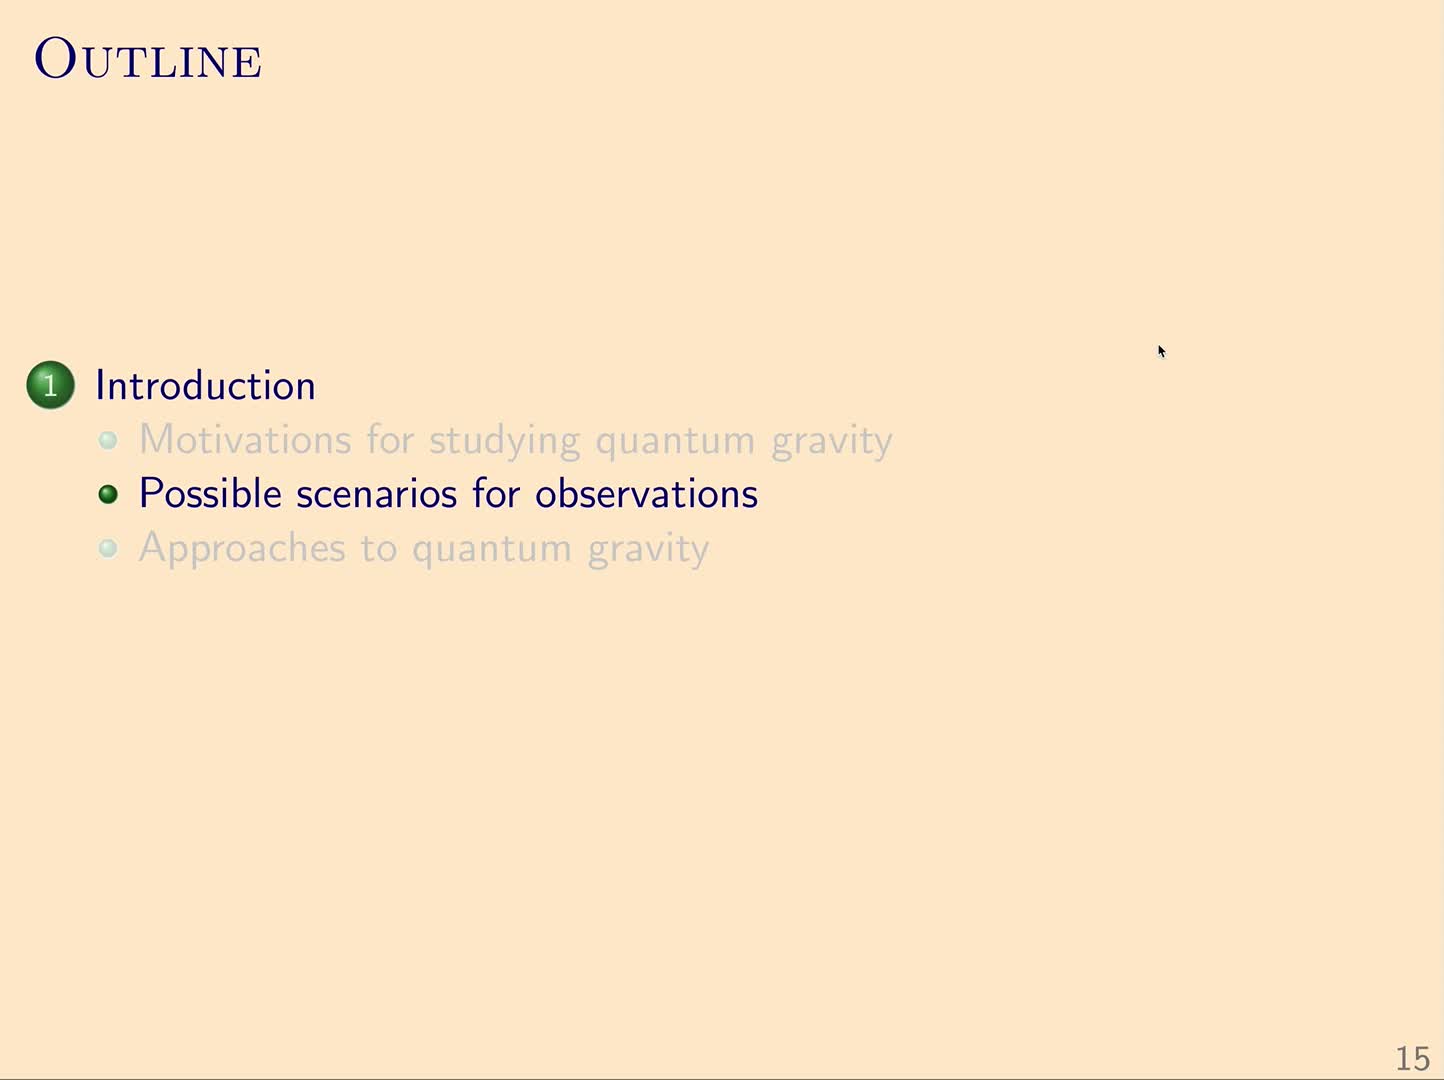 QG I: 1.2 - Possible scenarios for observations